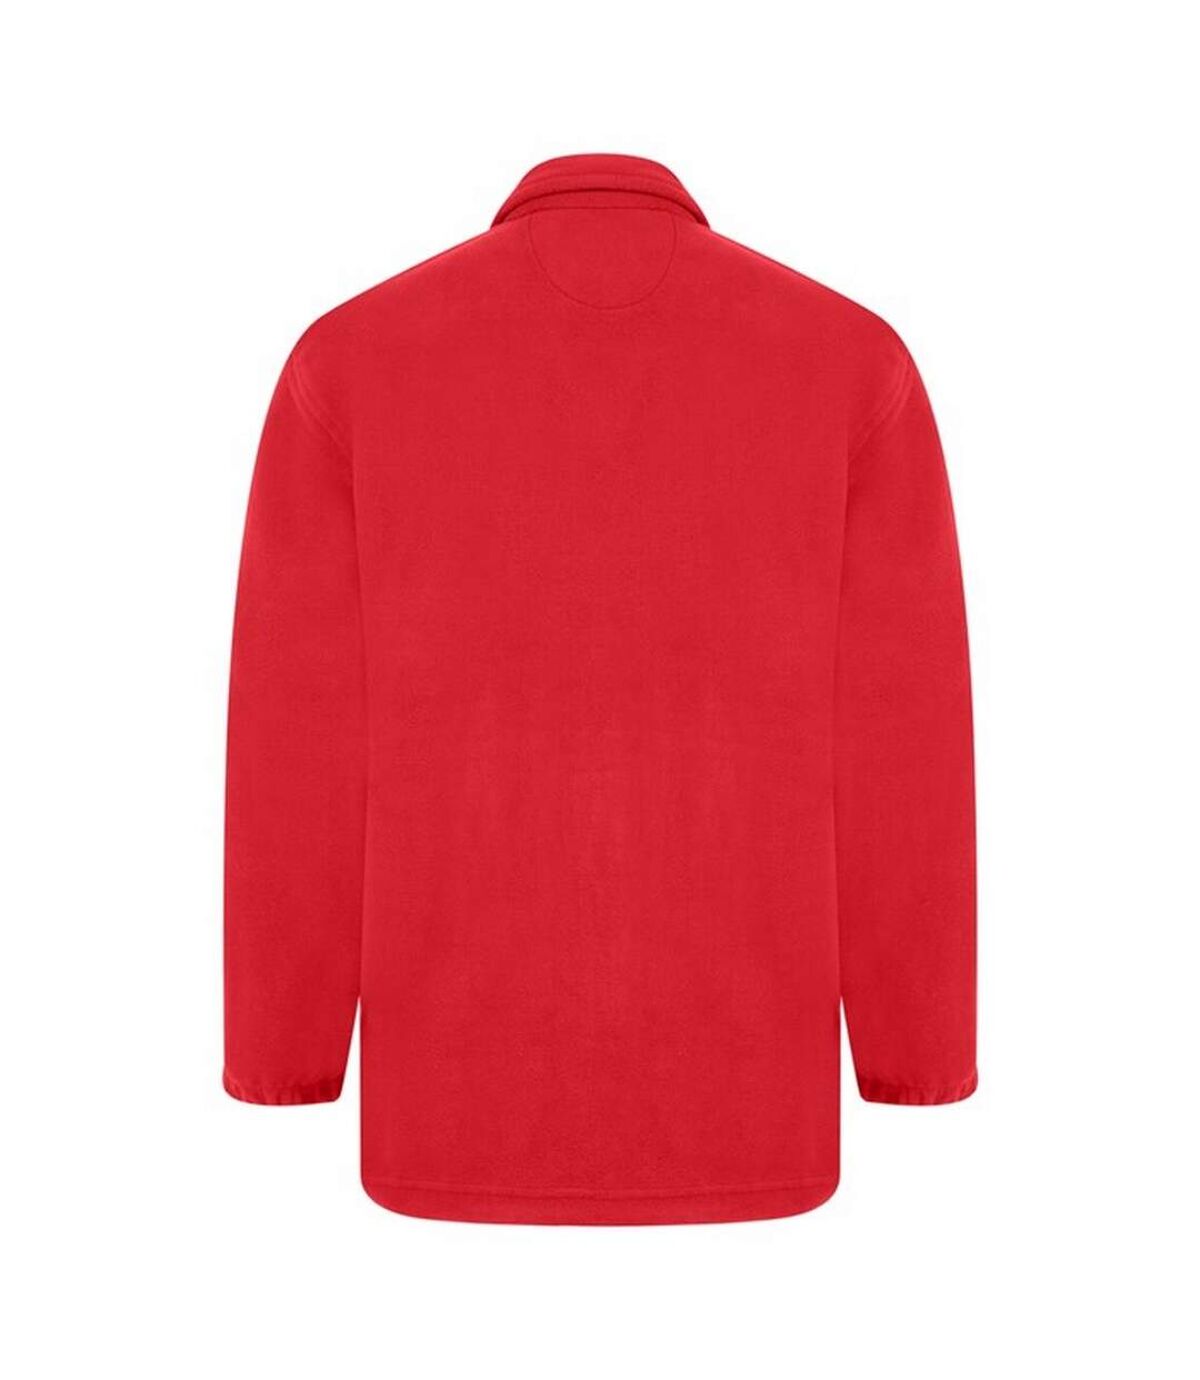 Absolute Apparel Heritage Full Zip Fleece (Red) - UTAB128